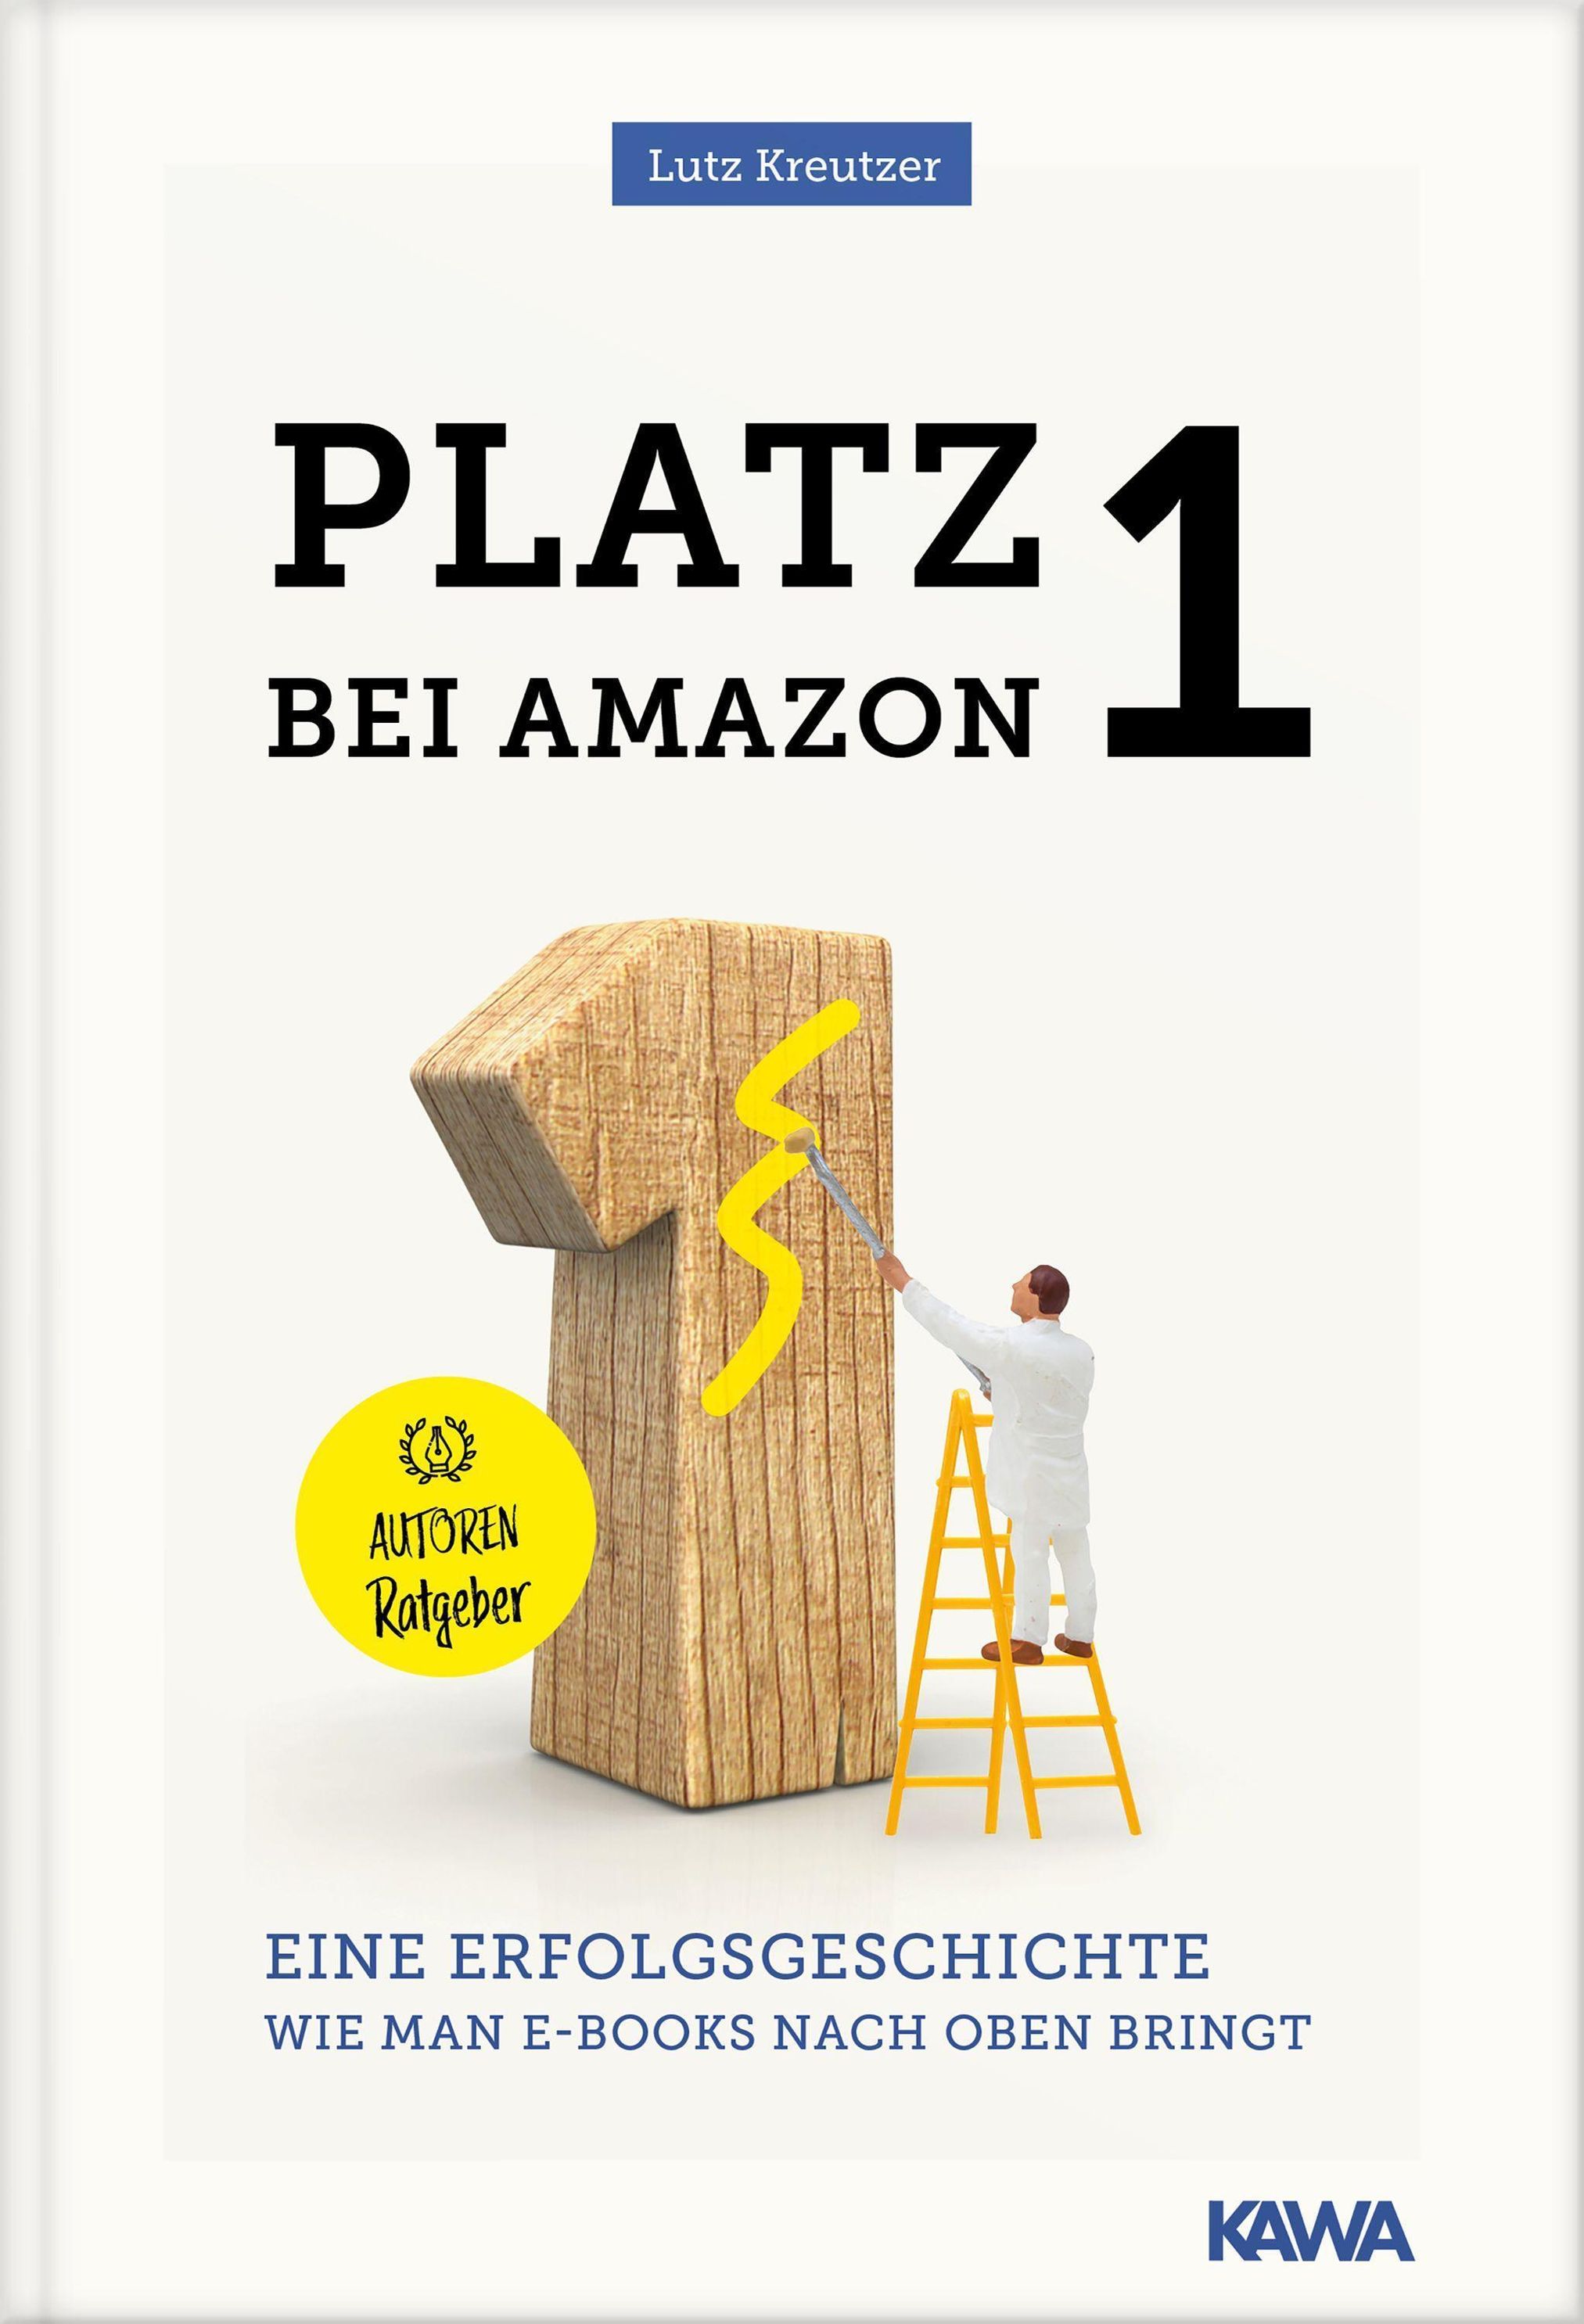 Platz 1 bei amazon Buch von Lutz Kreutzer versandkostenfrei - Weltbild.at